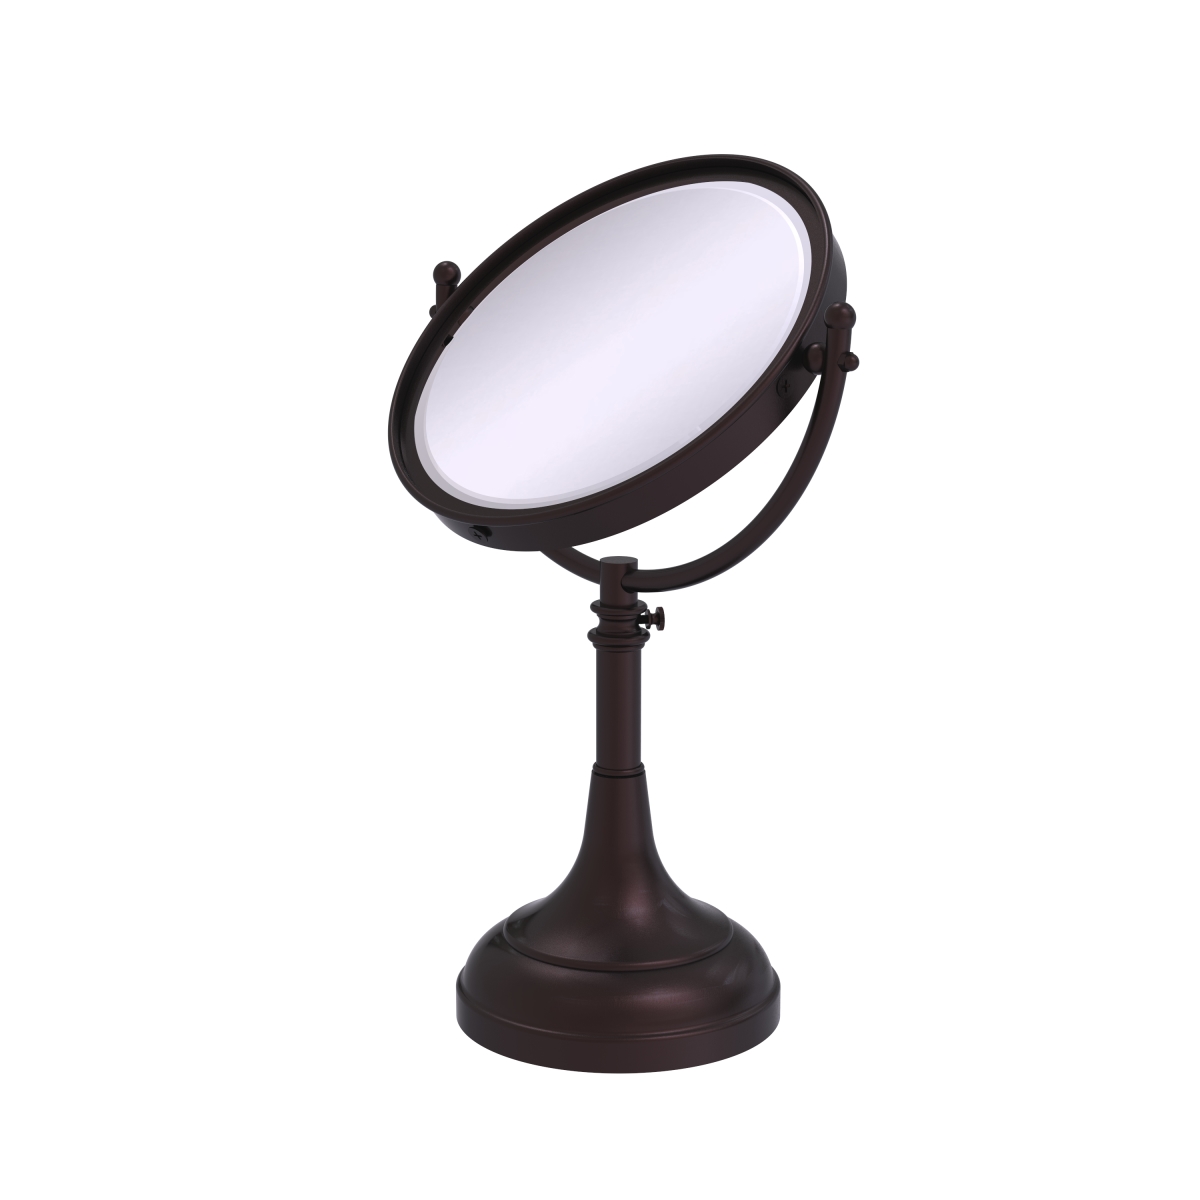 Dm-1-2x-abz Height Adjustable 8 In. Vanity Top Make-up Mirror 2x Magnification, Antique Bronze